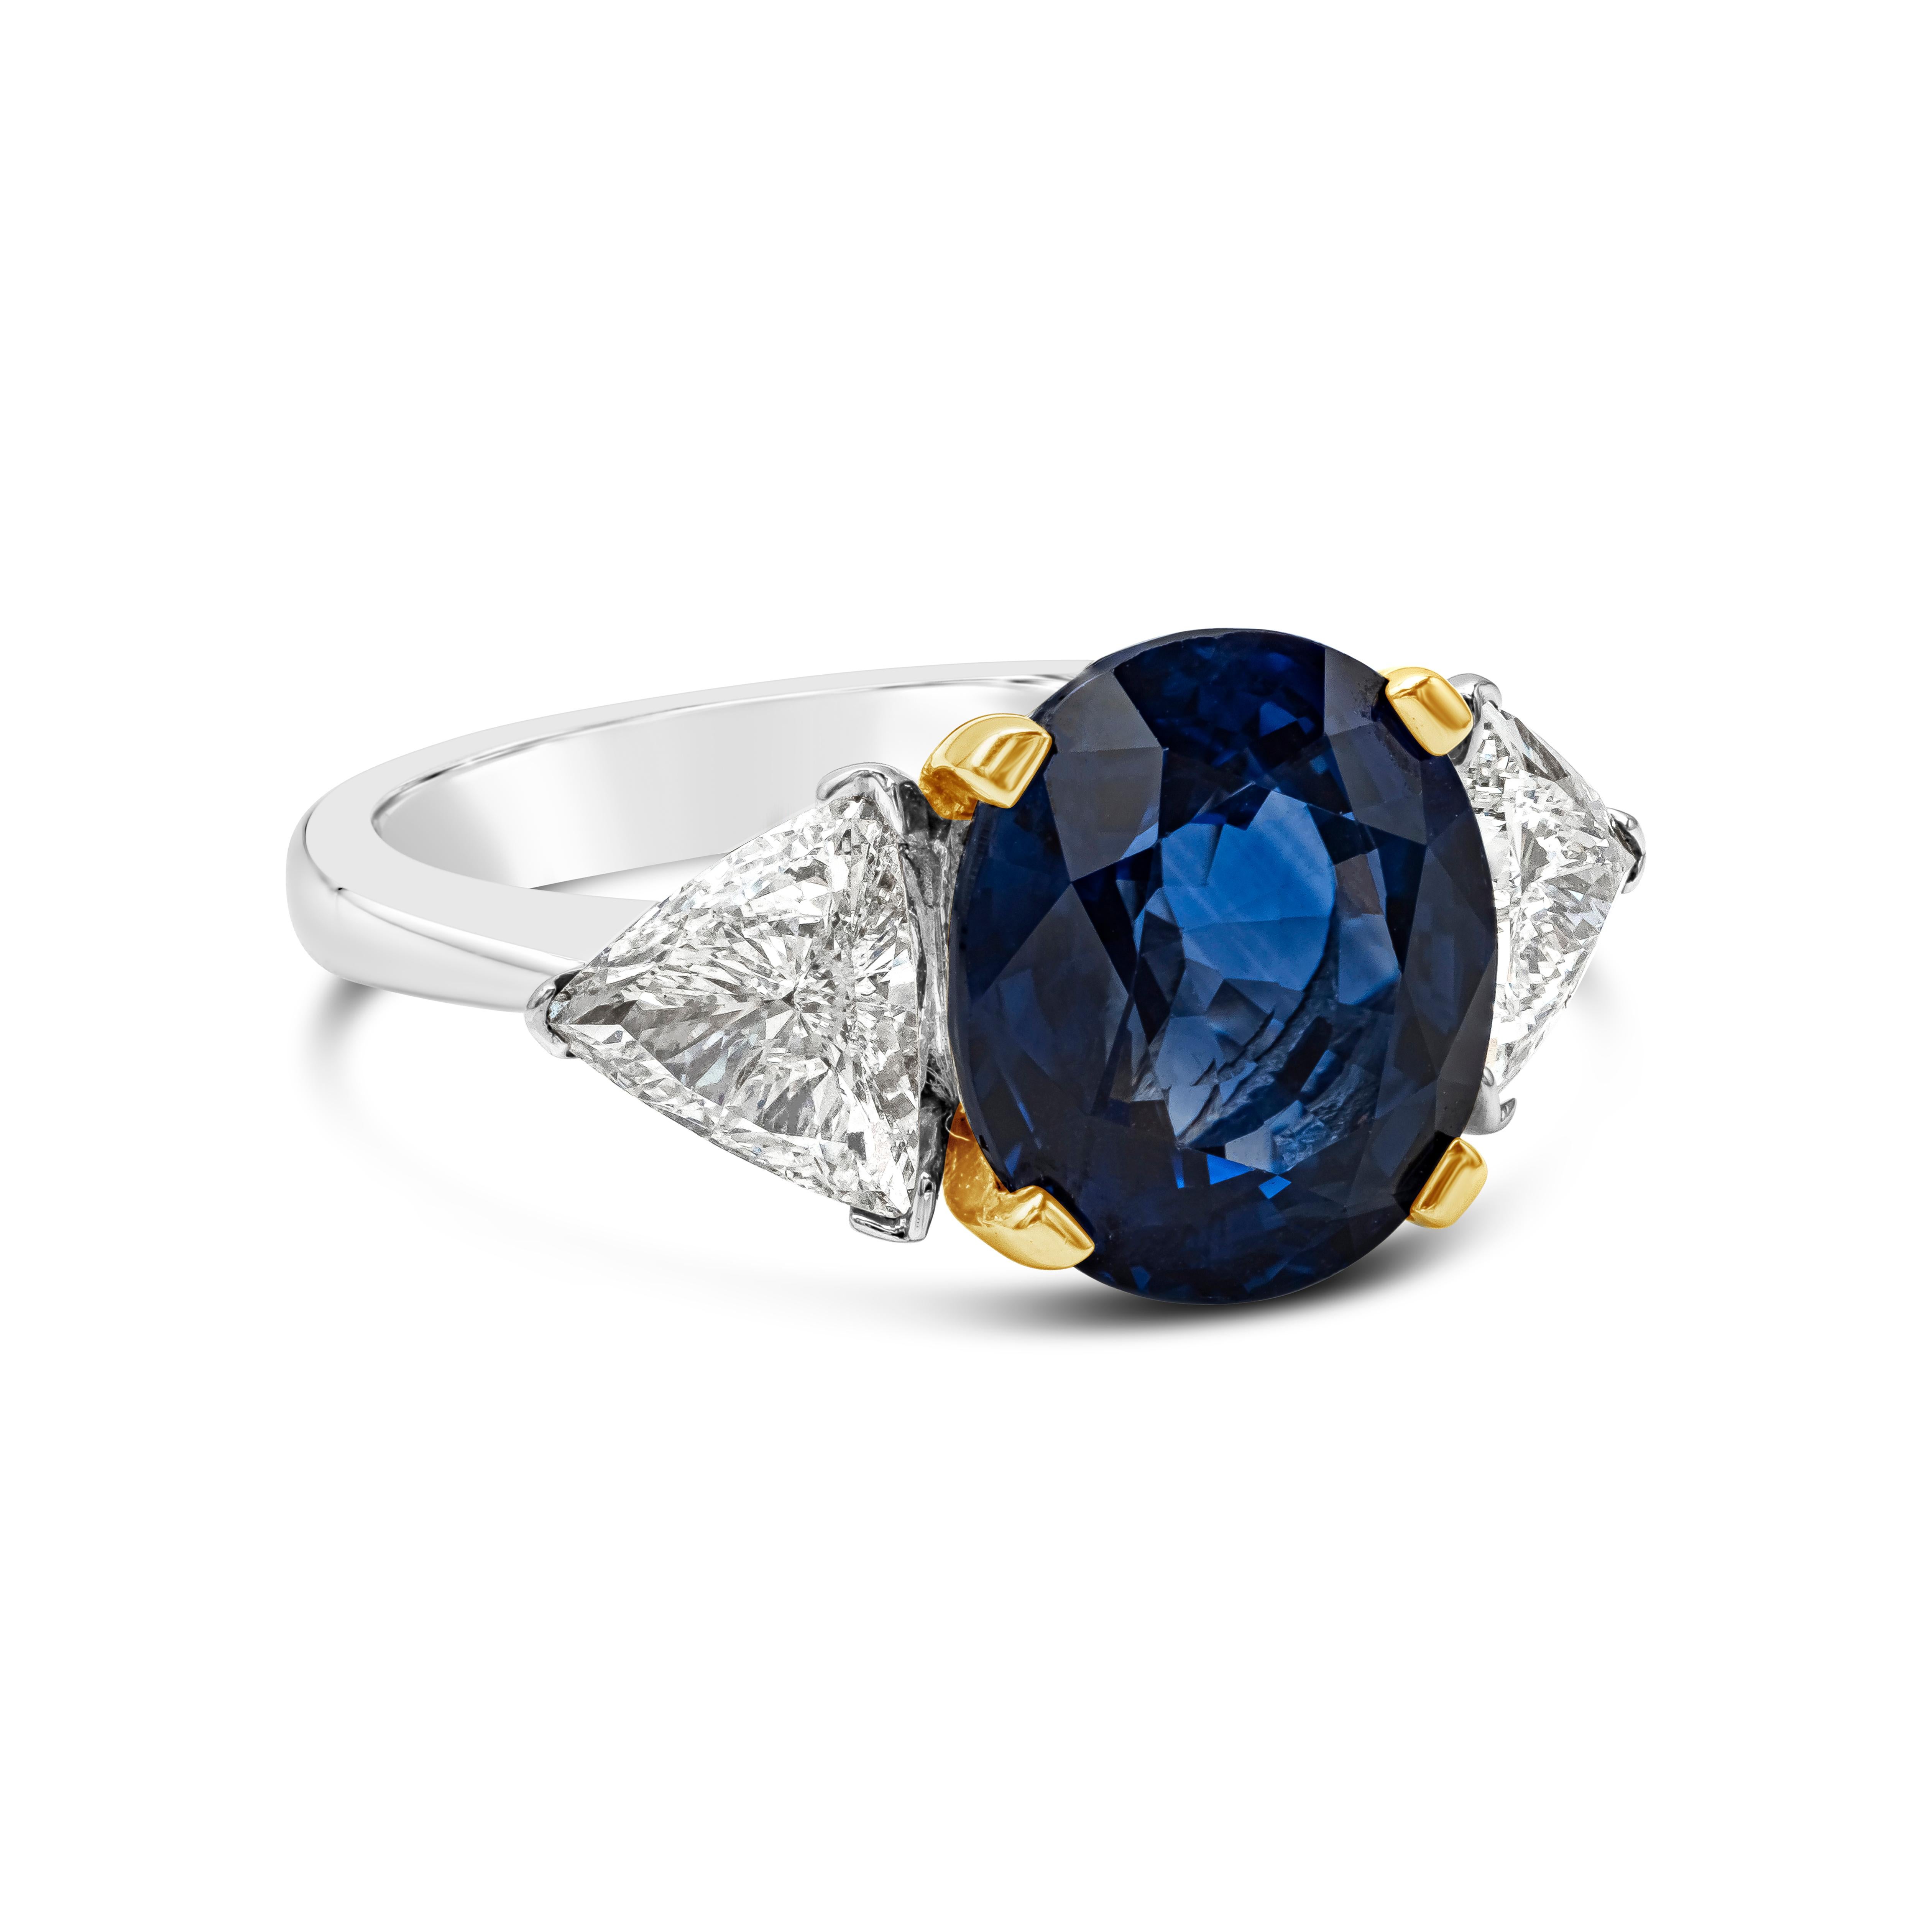 Dieser farbenprächtige und brillante Verlobungsring mit drei Steinen ist mit einem farbenprächtigen blauen Saphir von 5,28 Karat im Ovalschliff besetzt, der aus Sri Lanka stammt. In einer klassischen vierzackigen Korbfassung aus 18 Karat Gelbgold